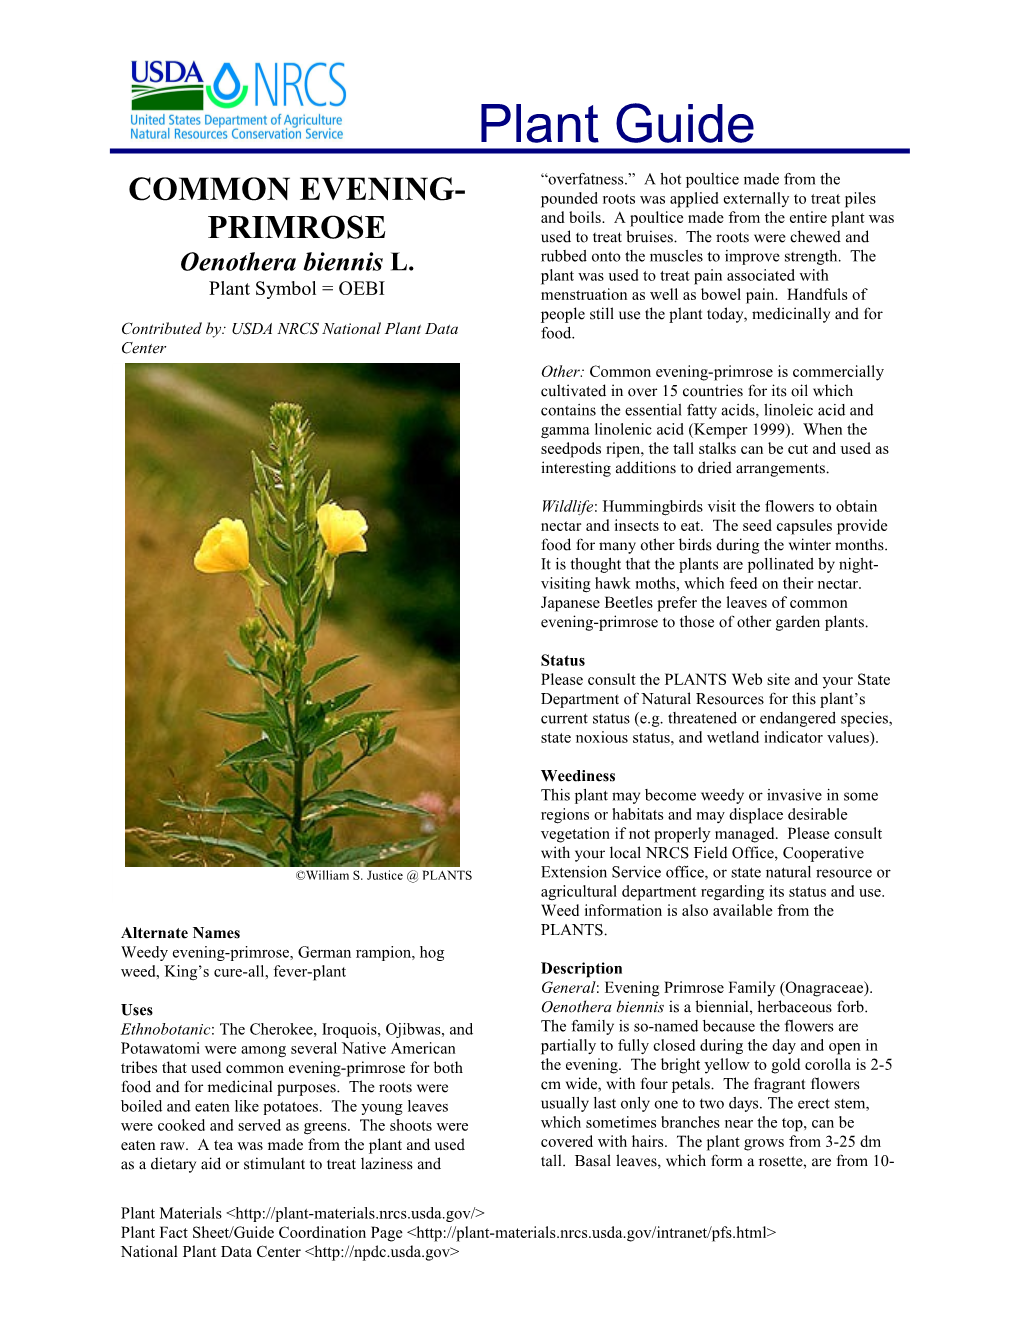 Common Evening-Primrose